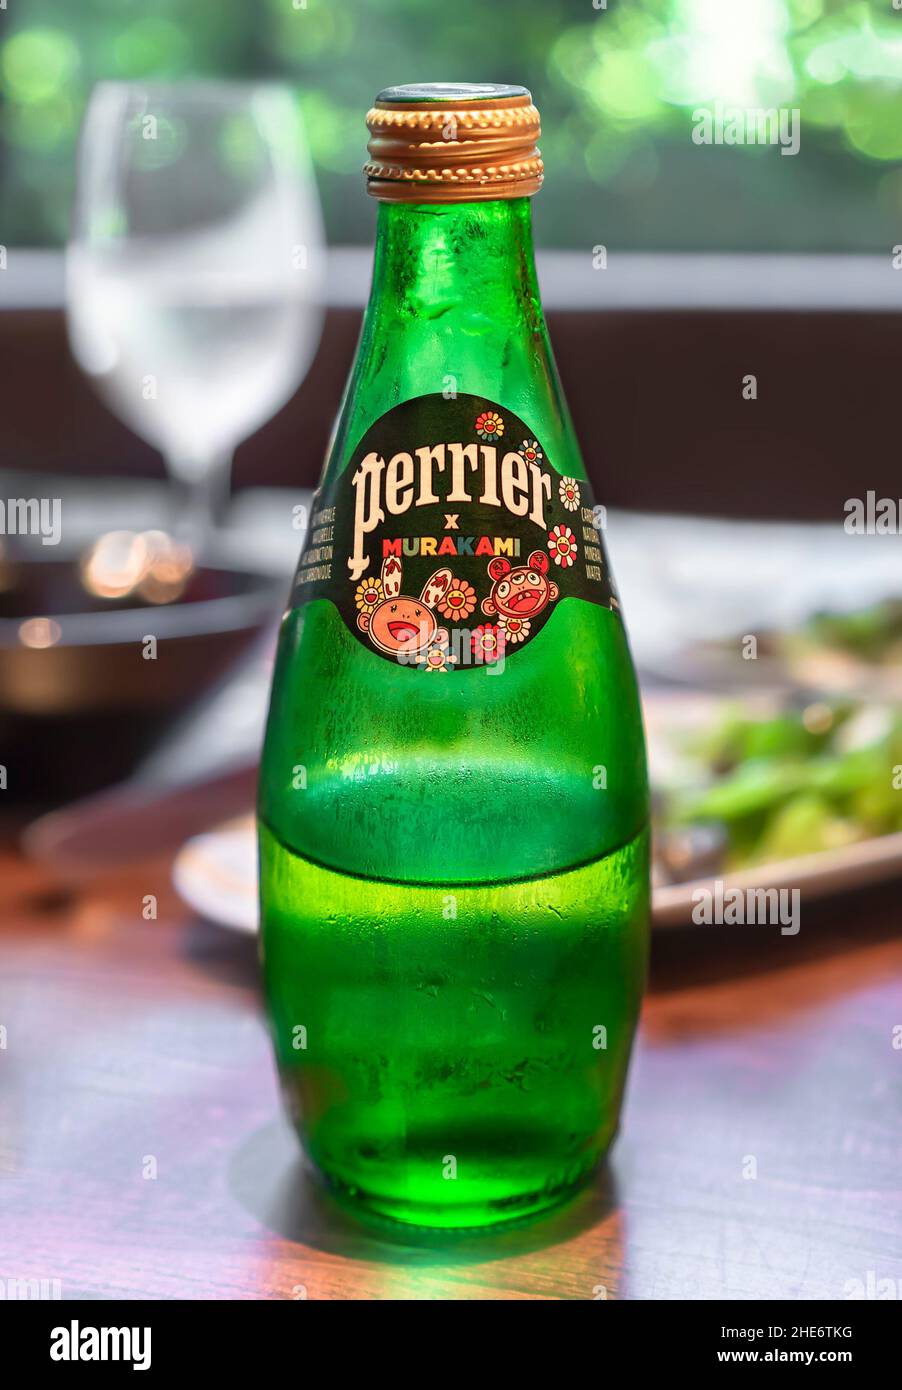 tokyo, giappone - luglio 18 2021: Bottiglia di vetro verde di acqua minerale francese Perrier con un'etichetta disegnata in collaborazione con i caratteri kaikai kiki di Foto Stock